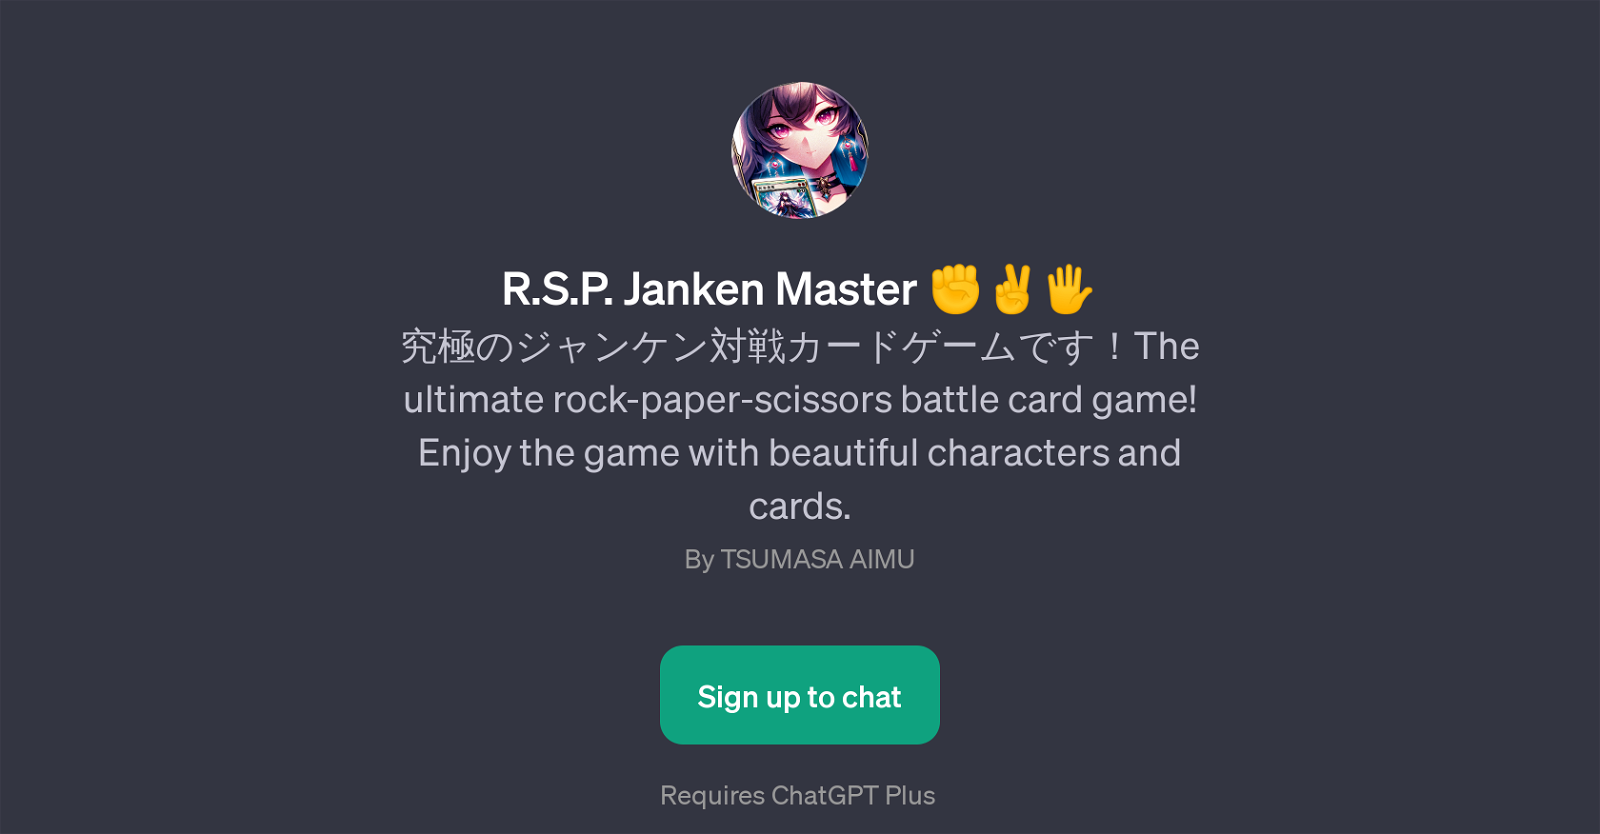 R.S.P. Janken Master website